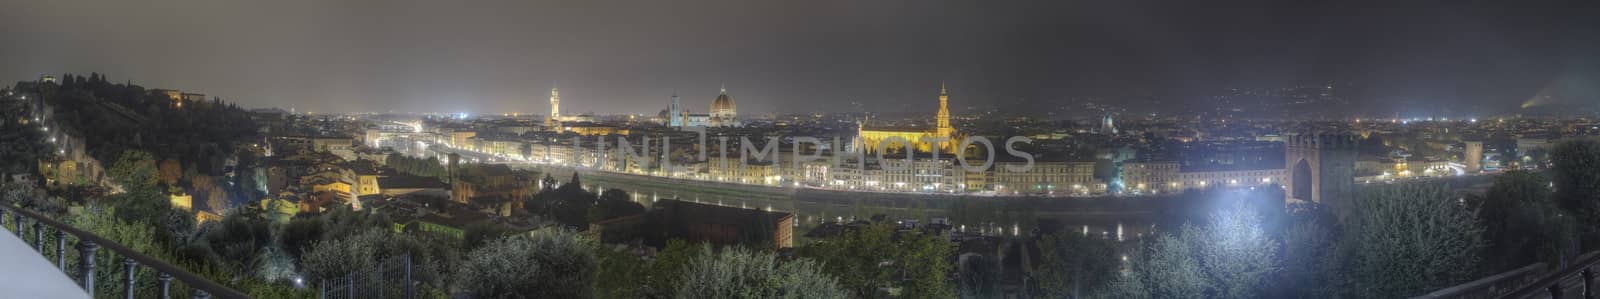 Florence cityscape with Duomo Santa Maria Del Fiore and Piazza Della Signoria from Piazzale Michelangelo, Italy
